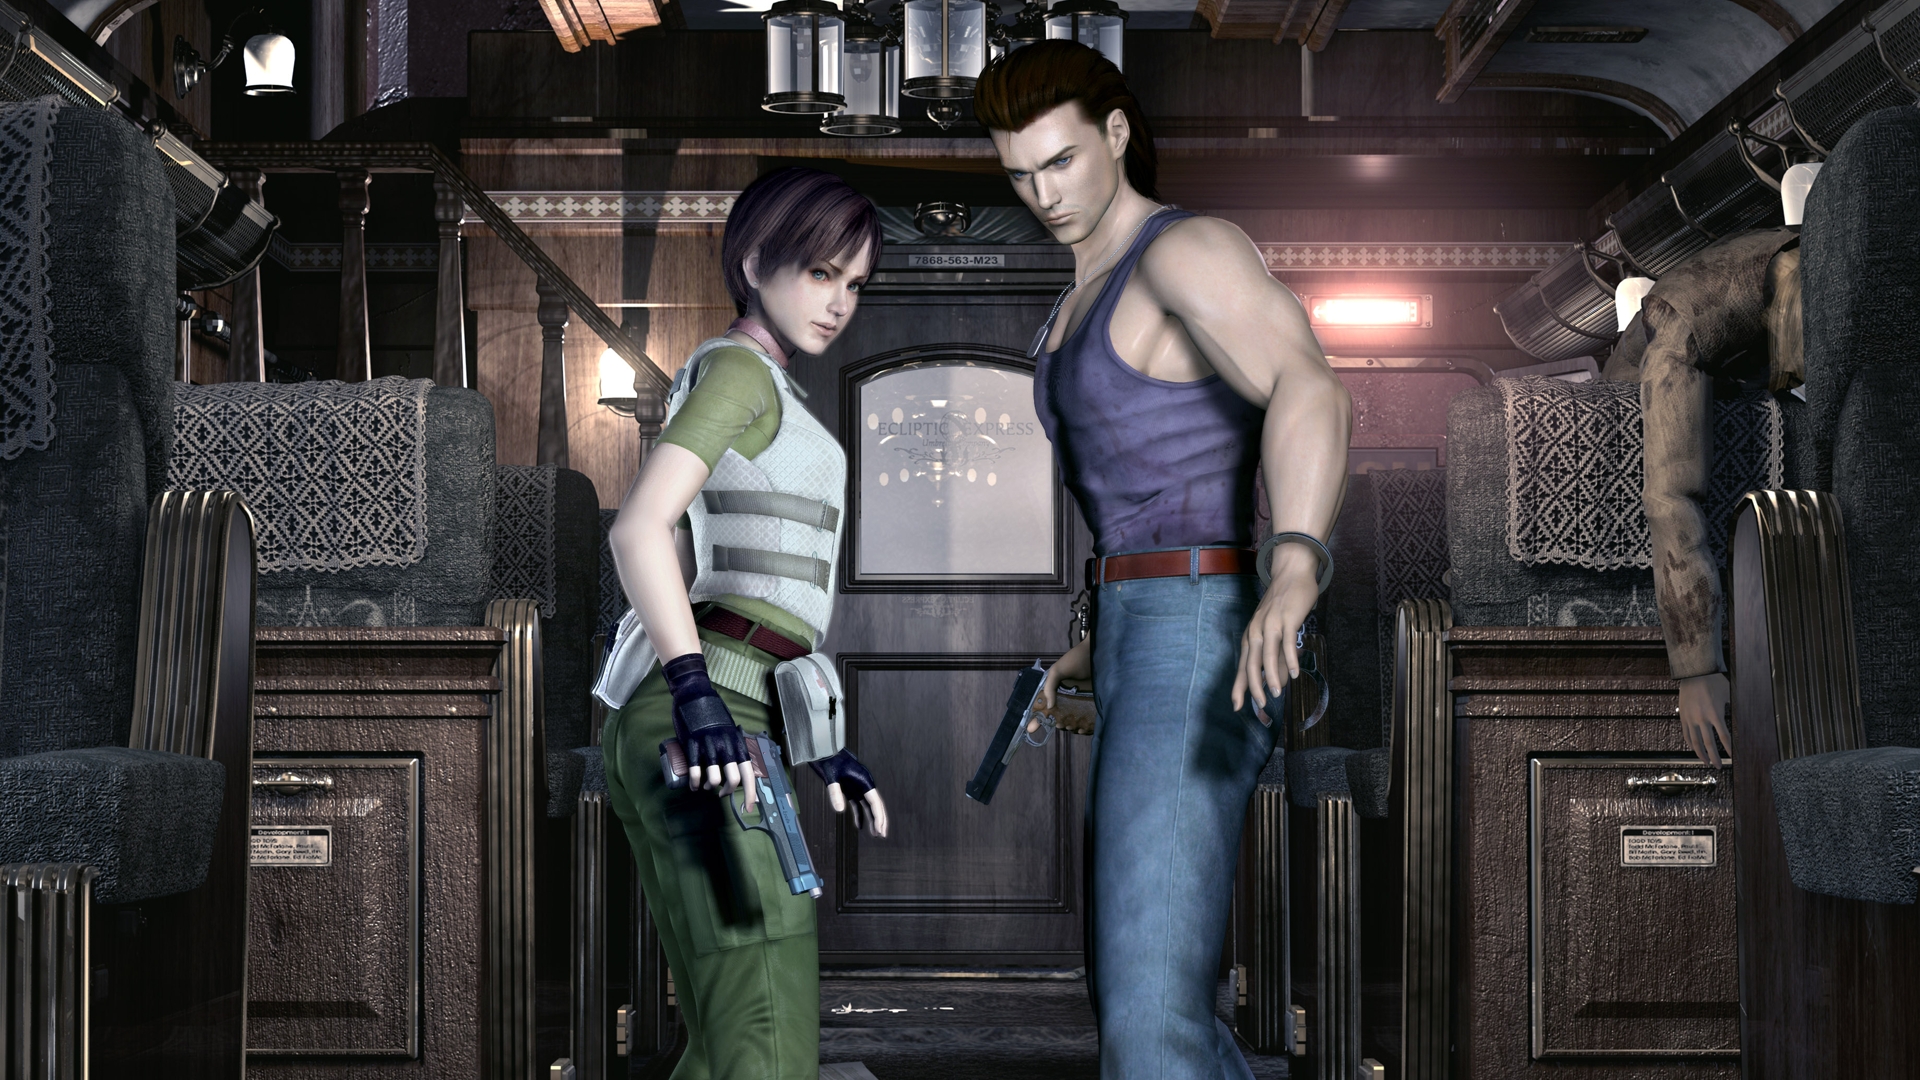 Detonado Resident Evil 0 & Resident Evil Code Verônica X